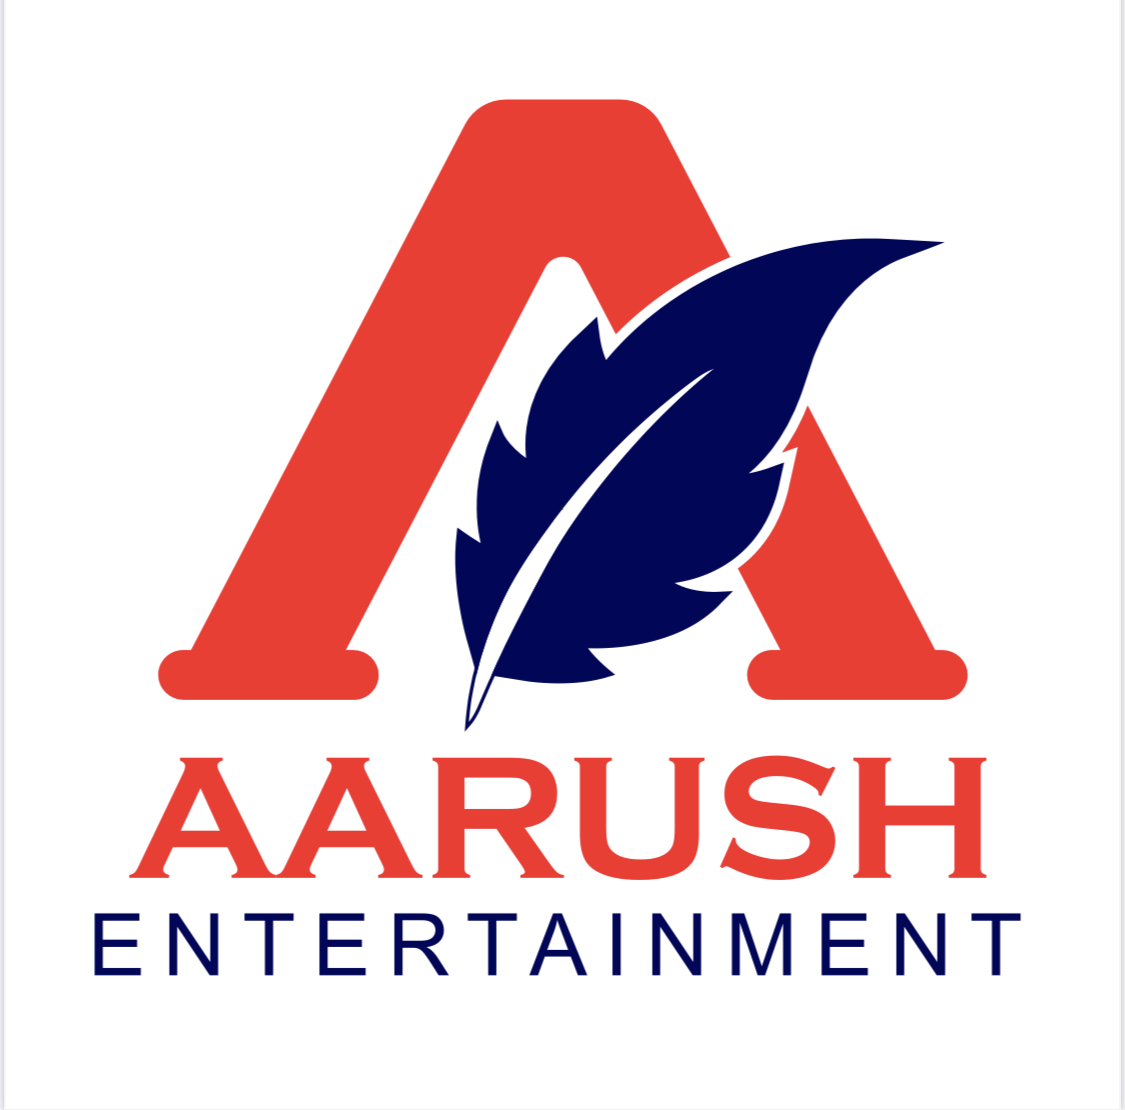 Aarush Entertainment